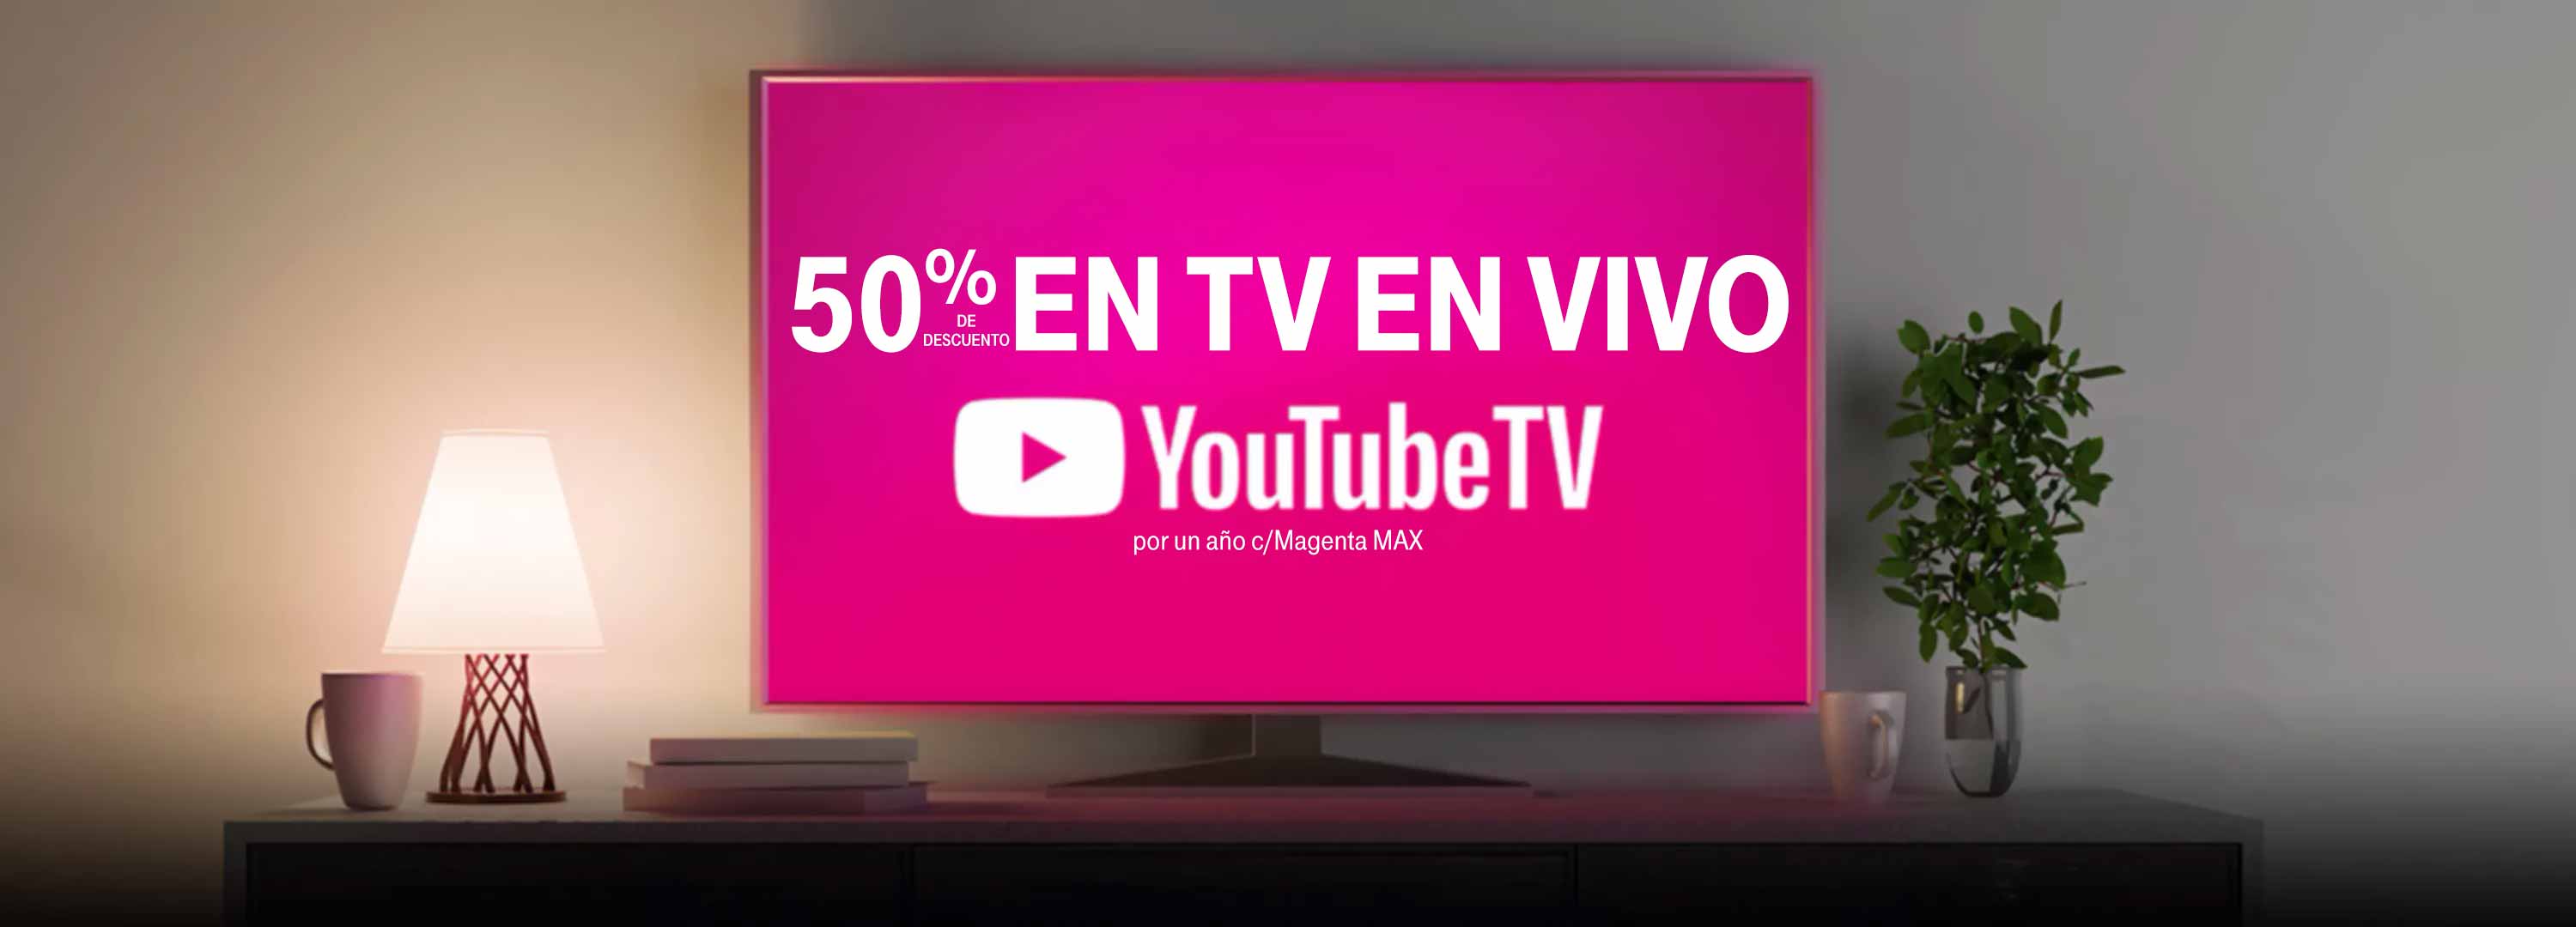 50% de descuento en TV EN VIVO. YouTubeTV por un año con Magenta Max